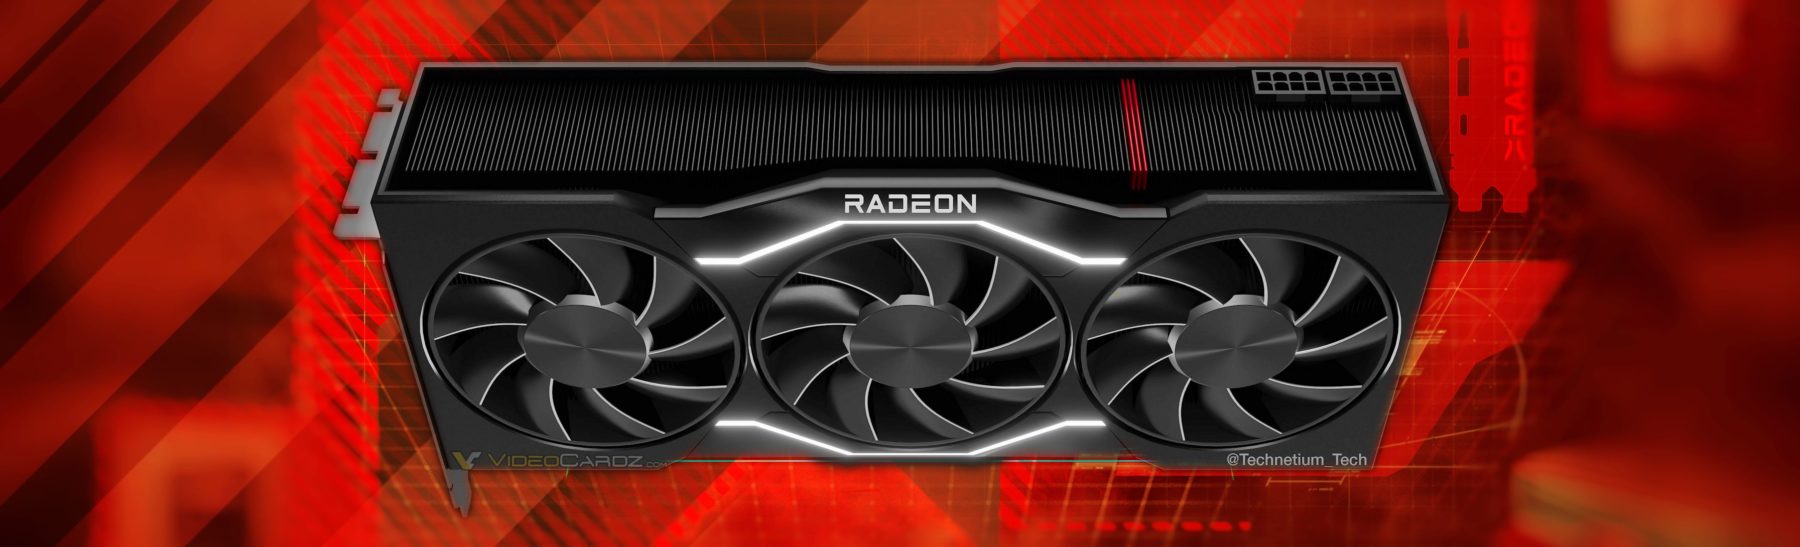 Immagine pubblicata in relazione al seguente contenuto: La prossima Radeon flag-ship potrebbe essere denominata Radeon RX 7900 XTX | Nome immagine: news33799_AMD-Radeon-RX-7900-XTX_1.jpg